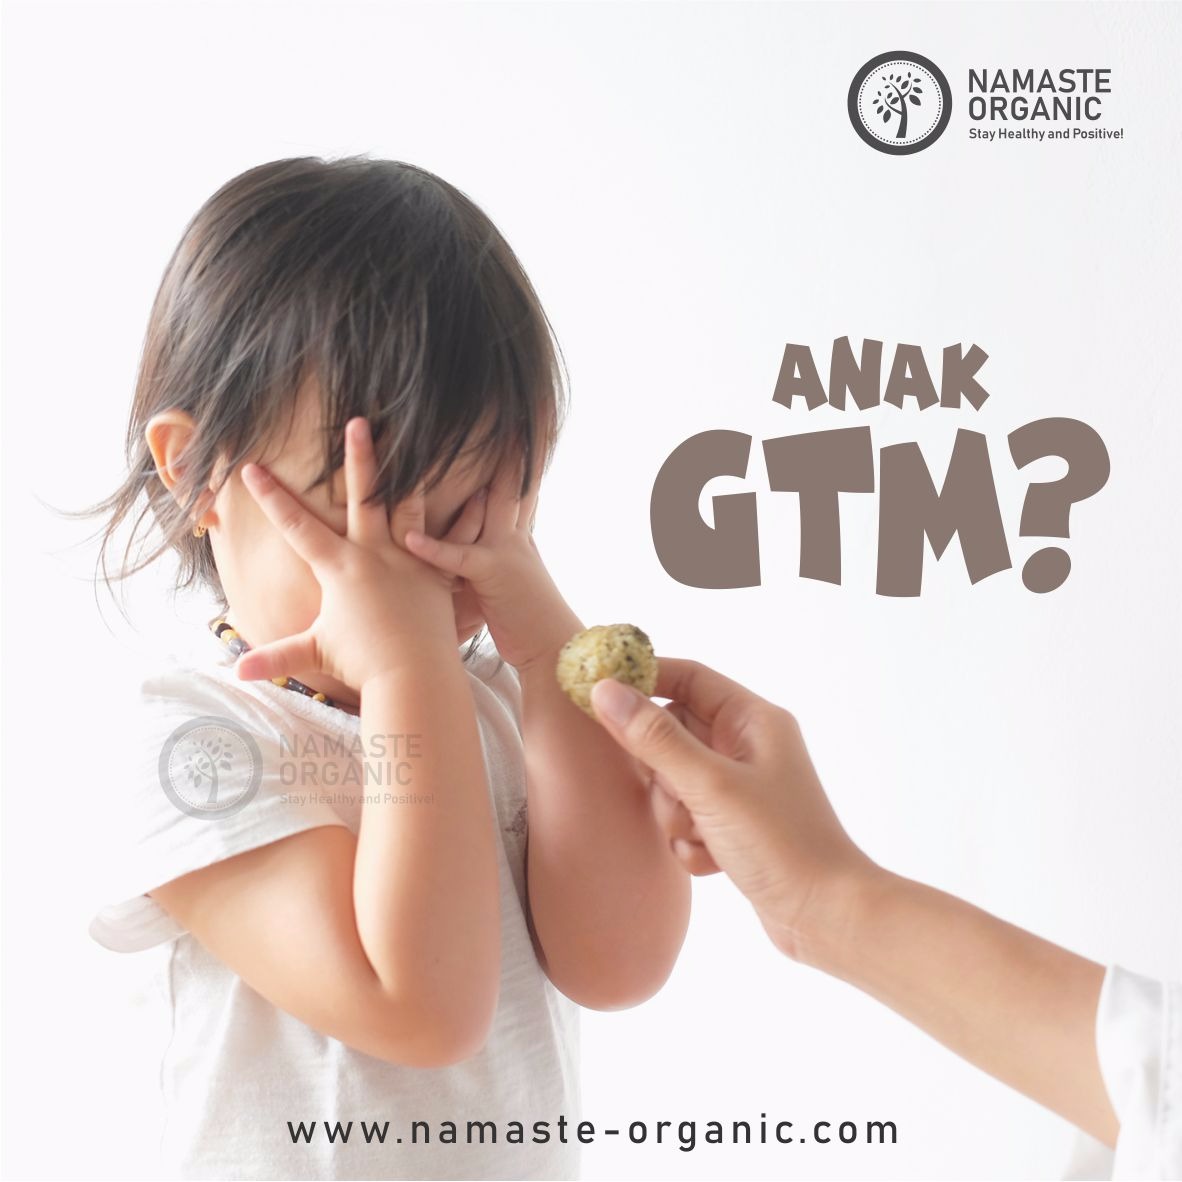 Anak GTM? image